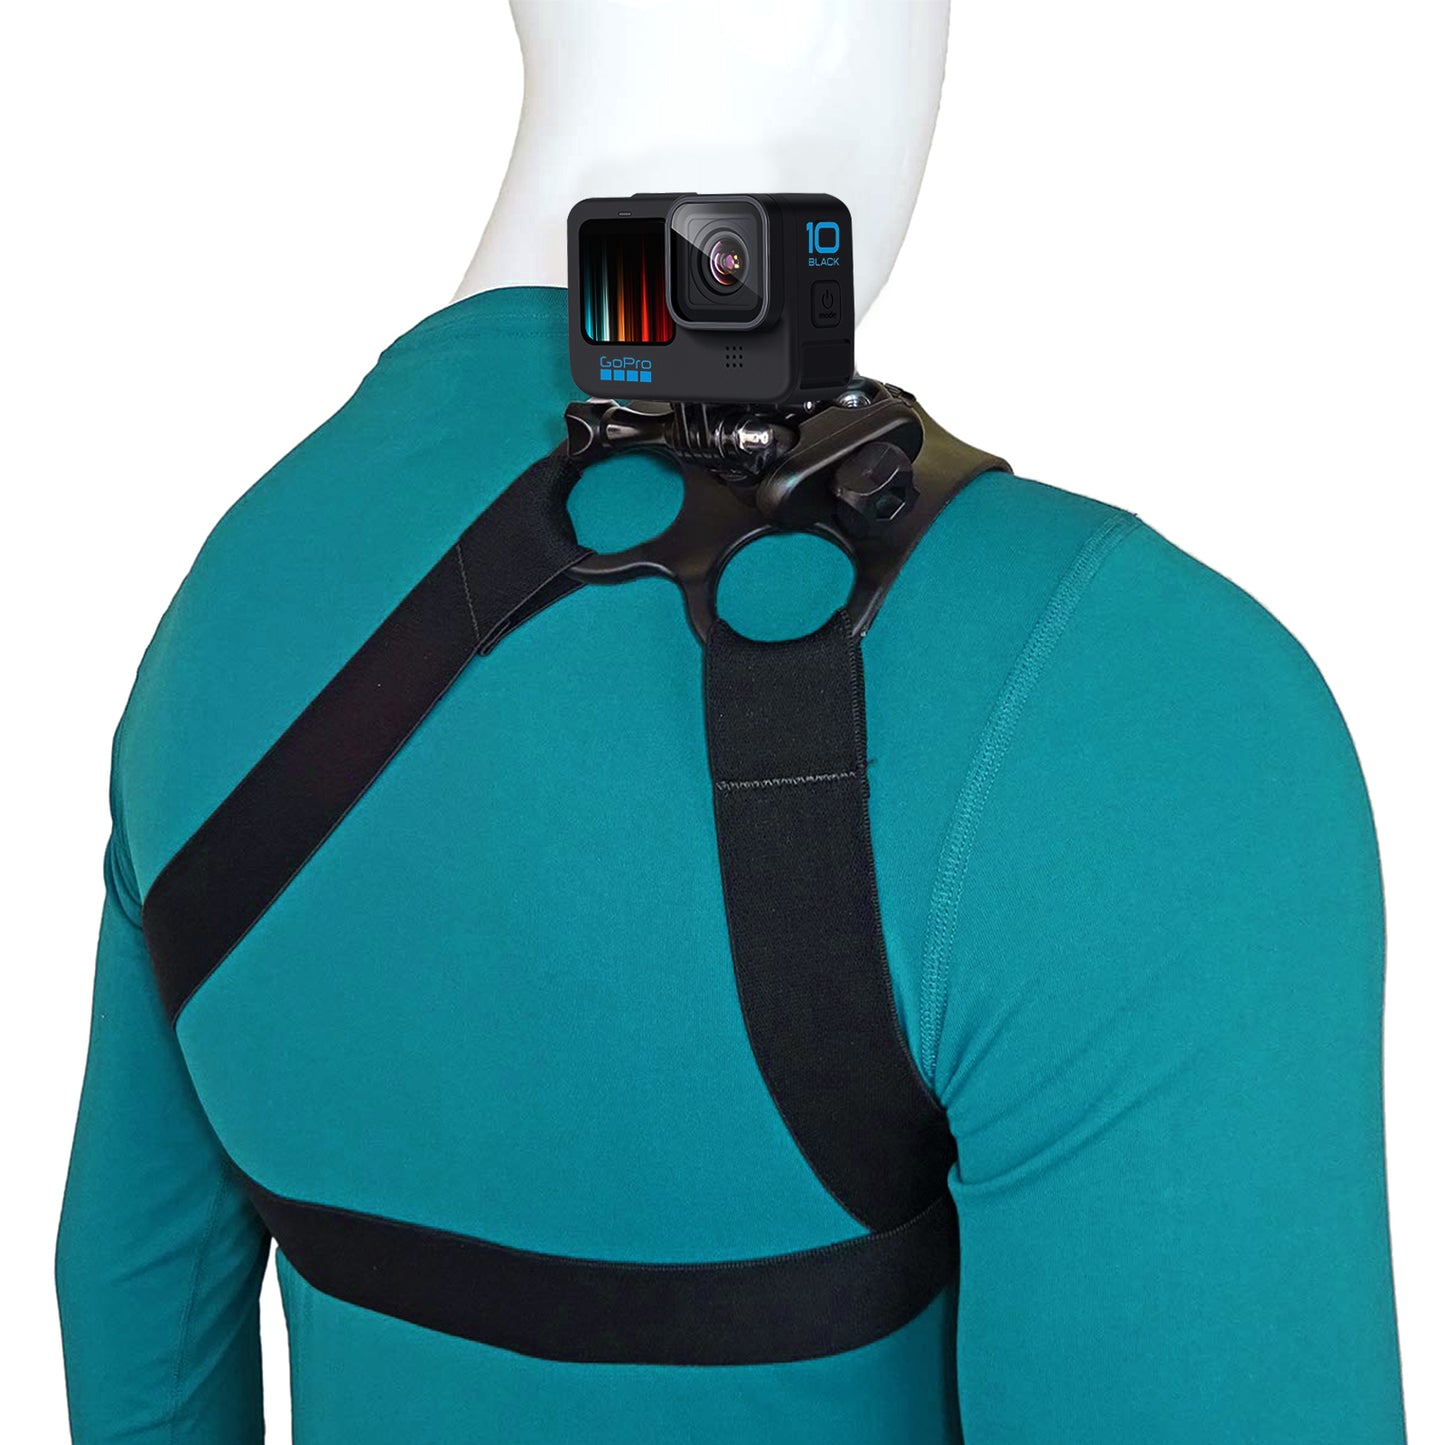 HSU Adjustable Shoulder Strap Grip Mount For GoPro & Other Action Cameras